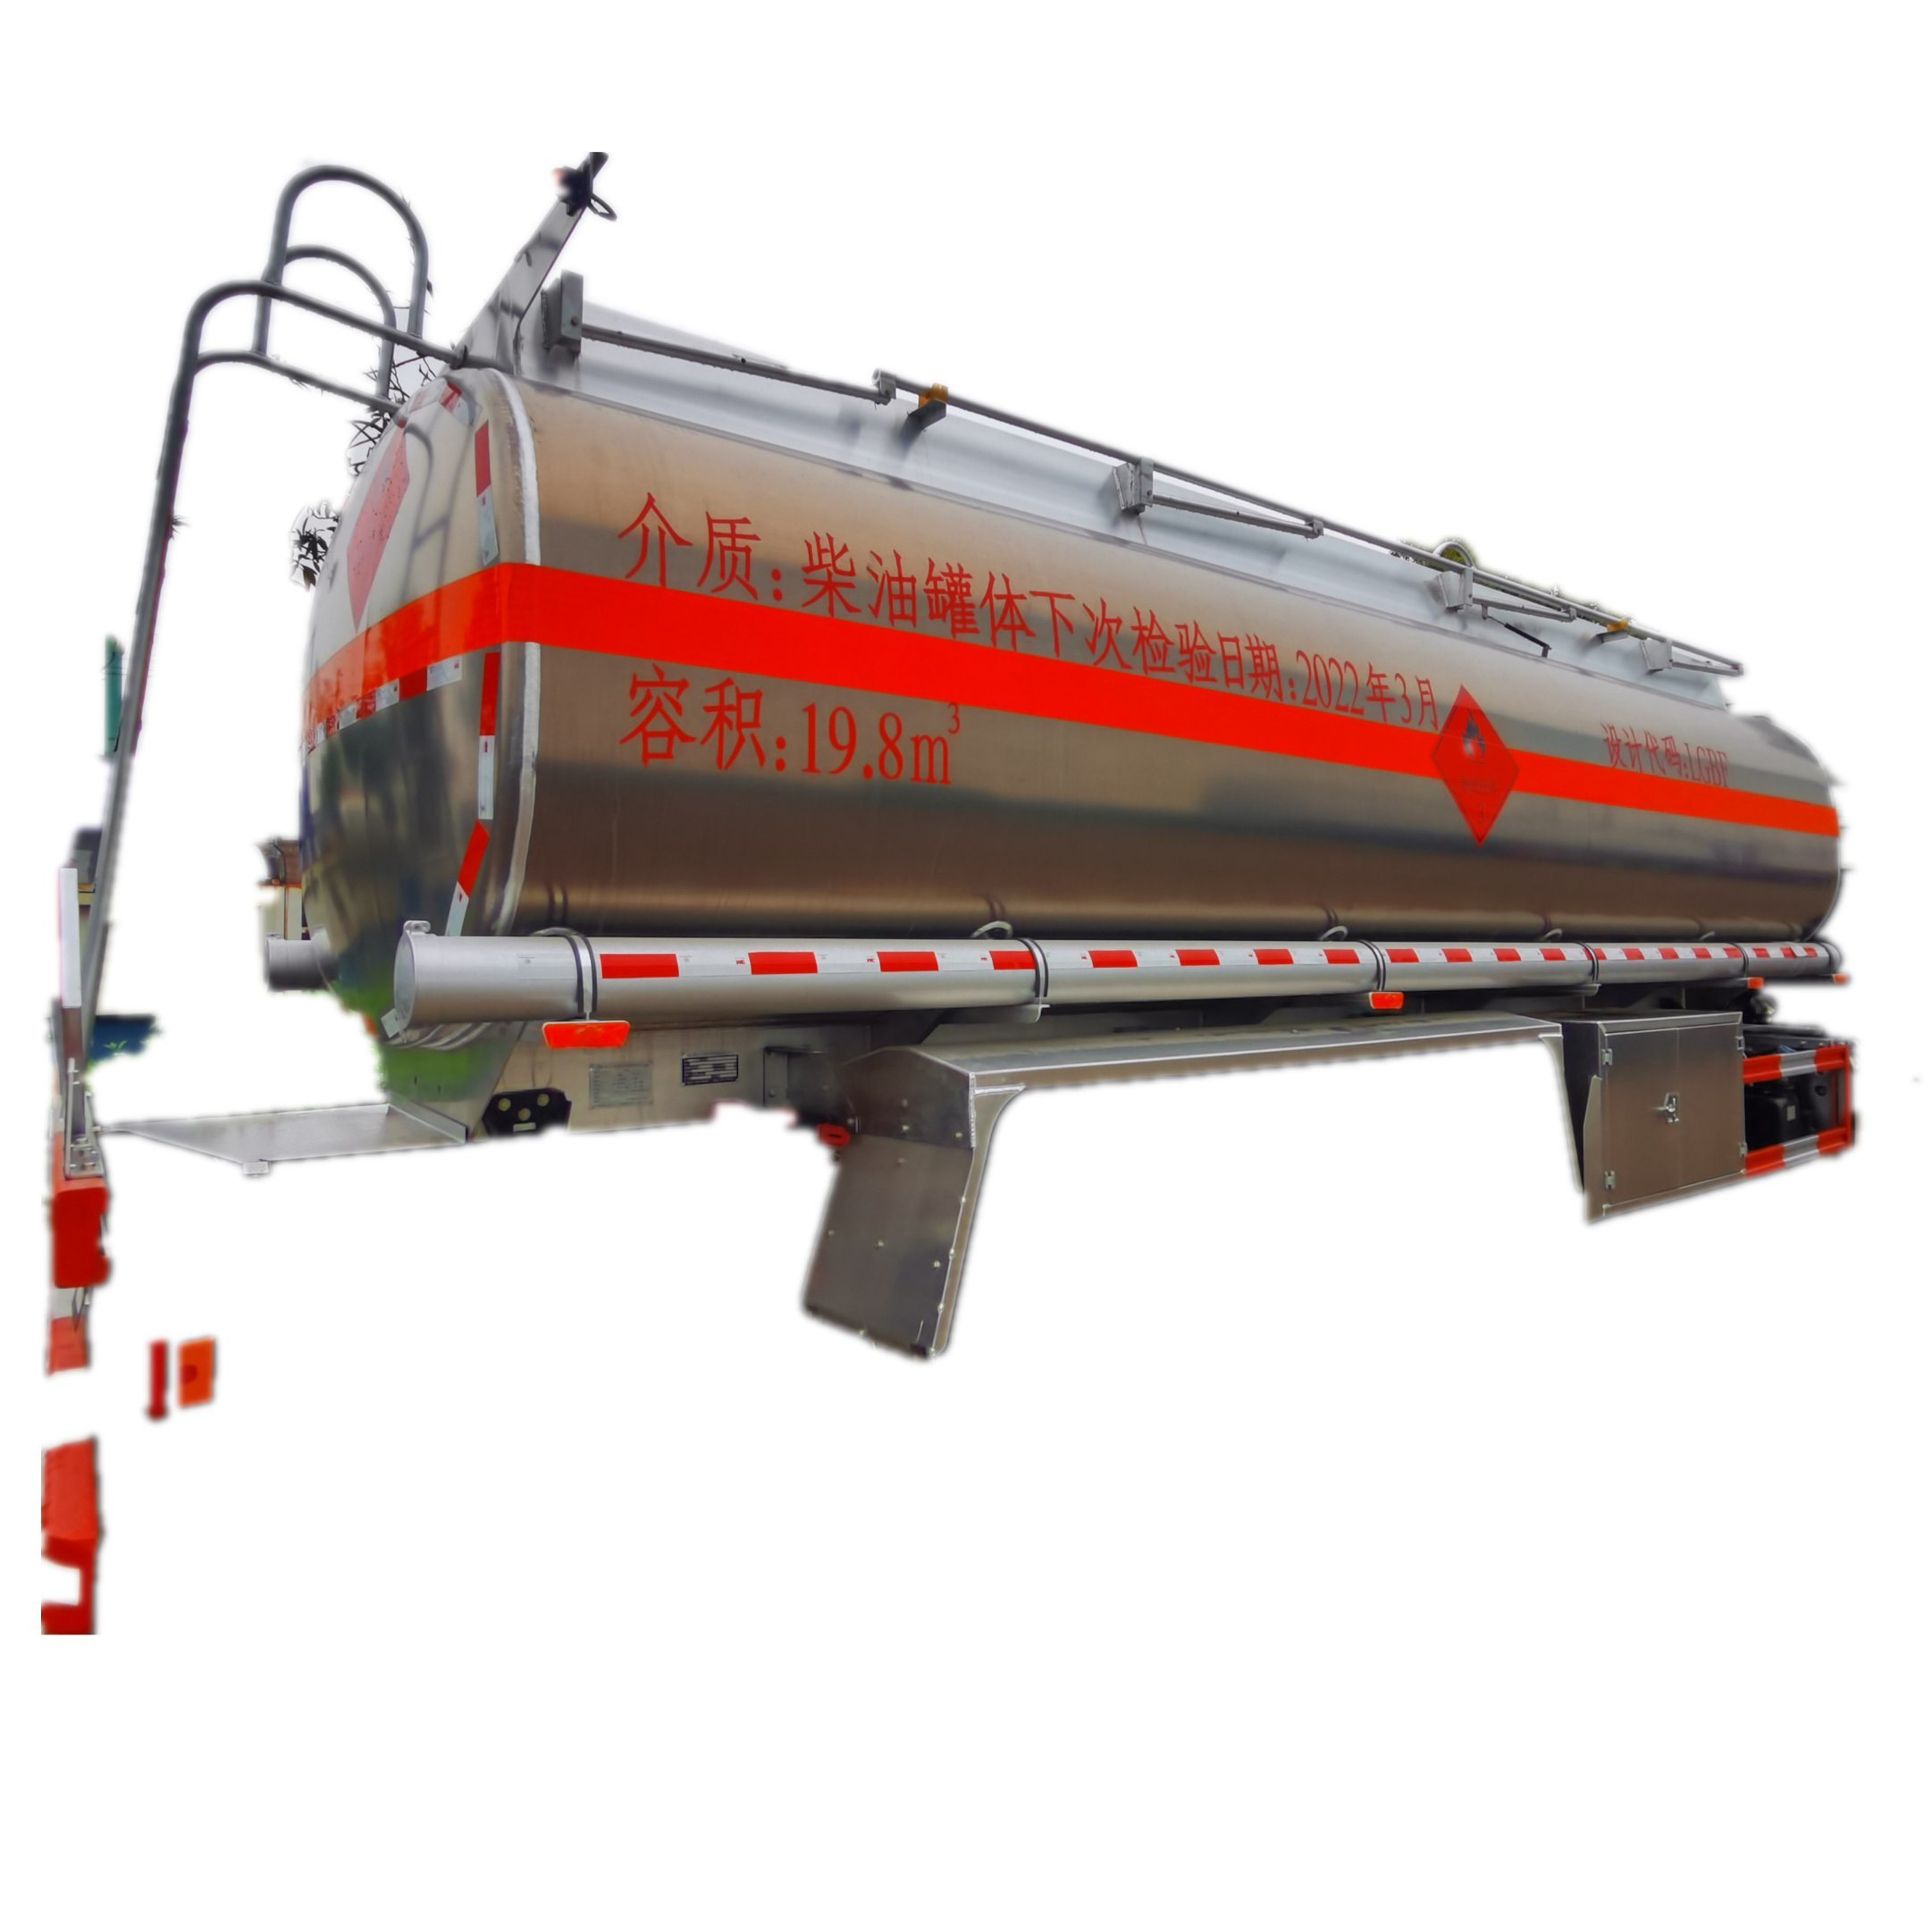 Customizing Aluminum Fuel Tank for Trucks (5KL-25KL Tanker Body)